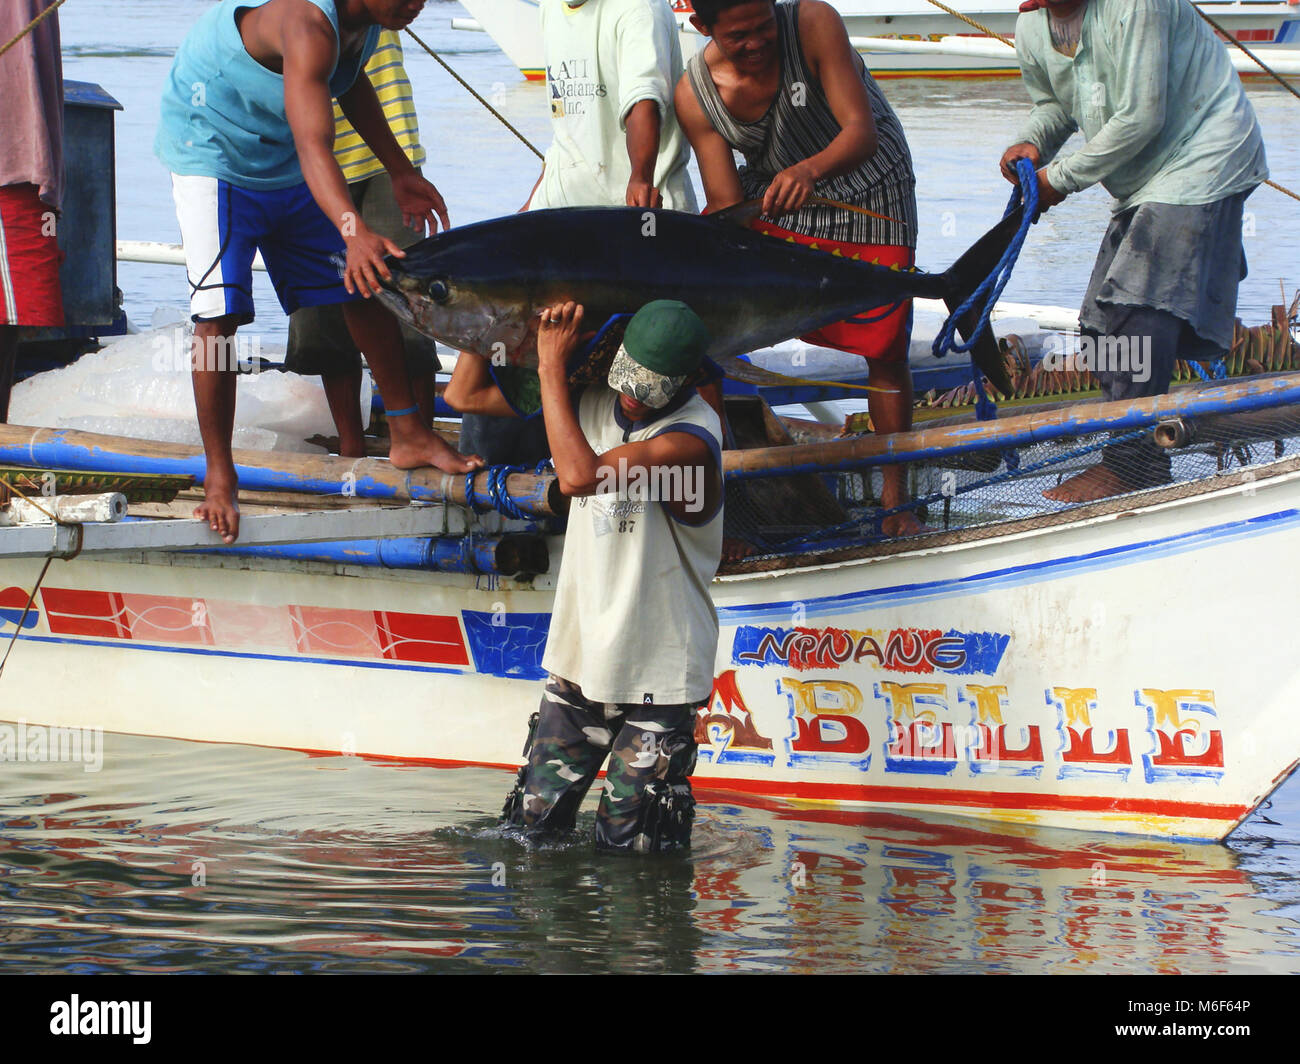 Artisanal Filipino handline fishermen landing yellowfin tuna Thunnus  albacares in Occidental Mindoro Stock Photo - Alamy